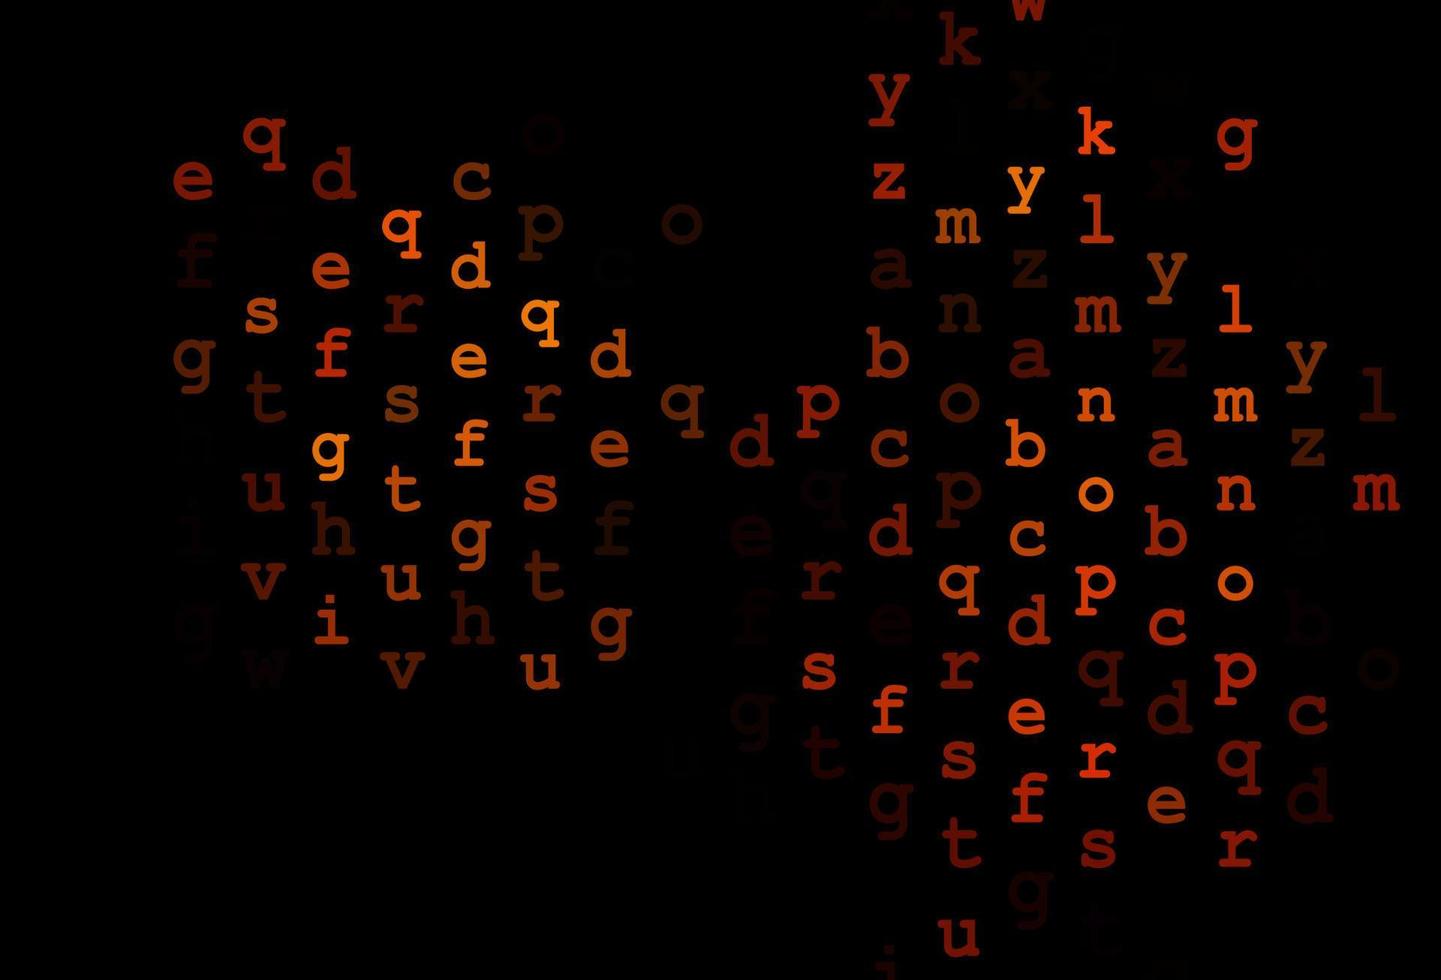 padrão de vetor laranja escuro com símbolos abc.